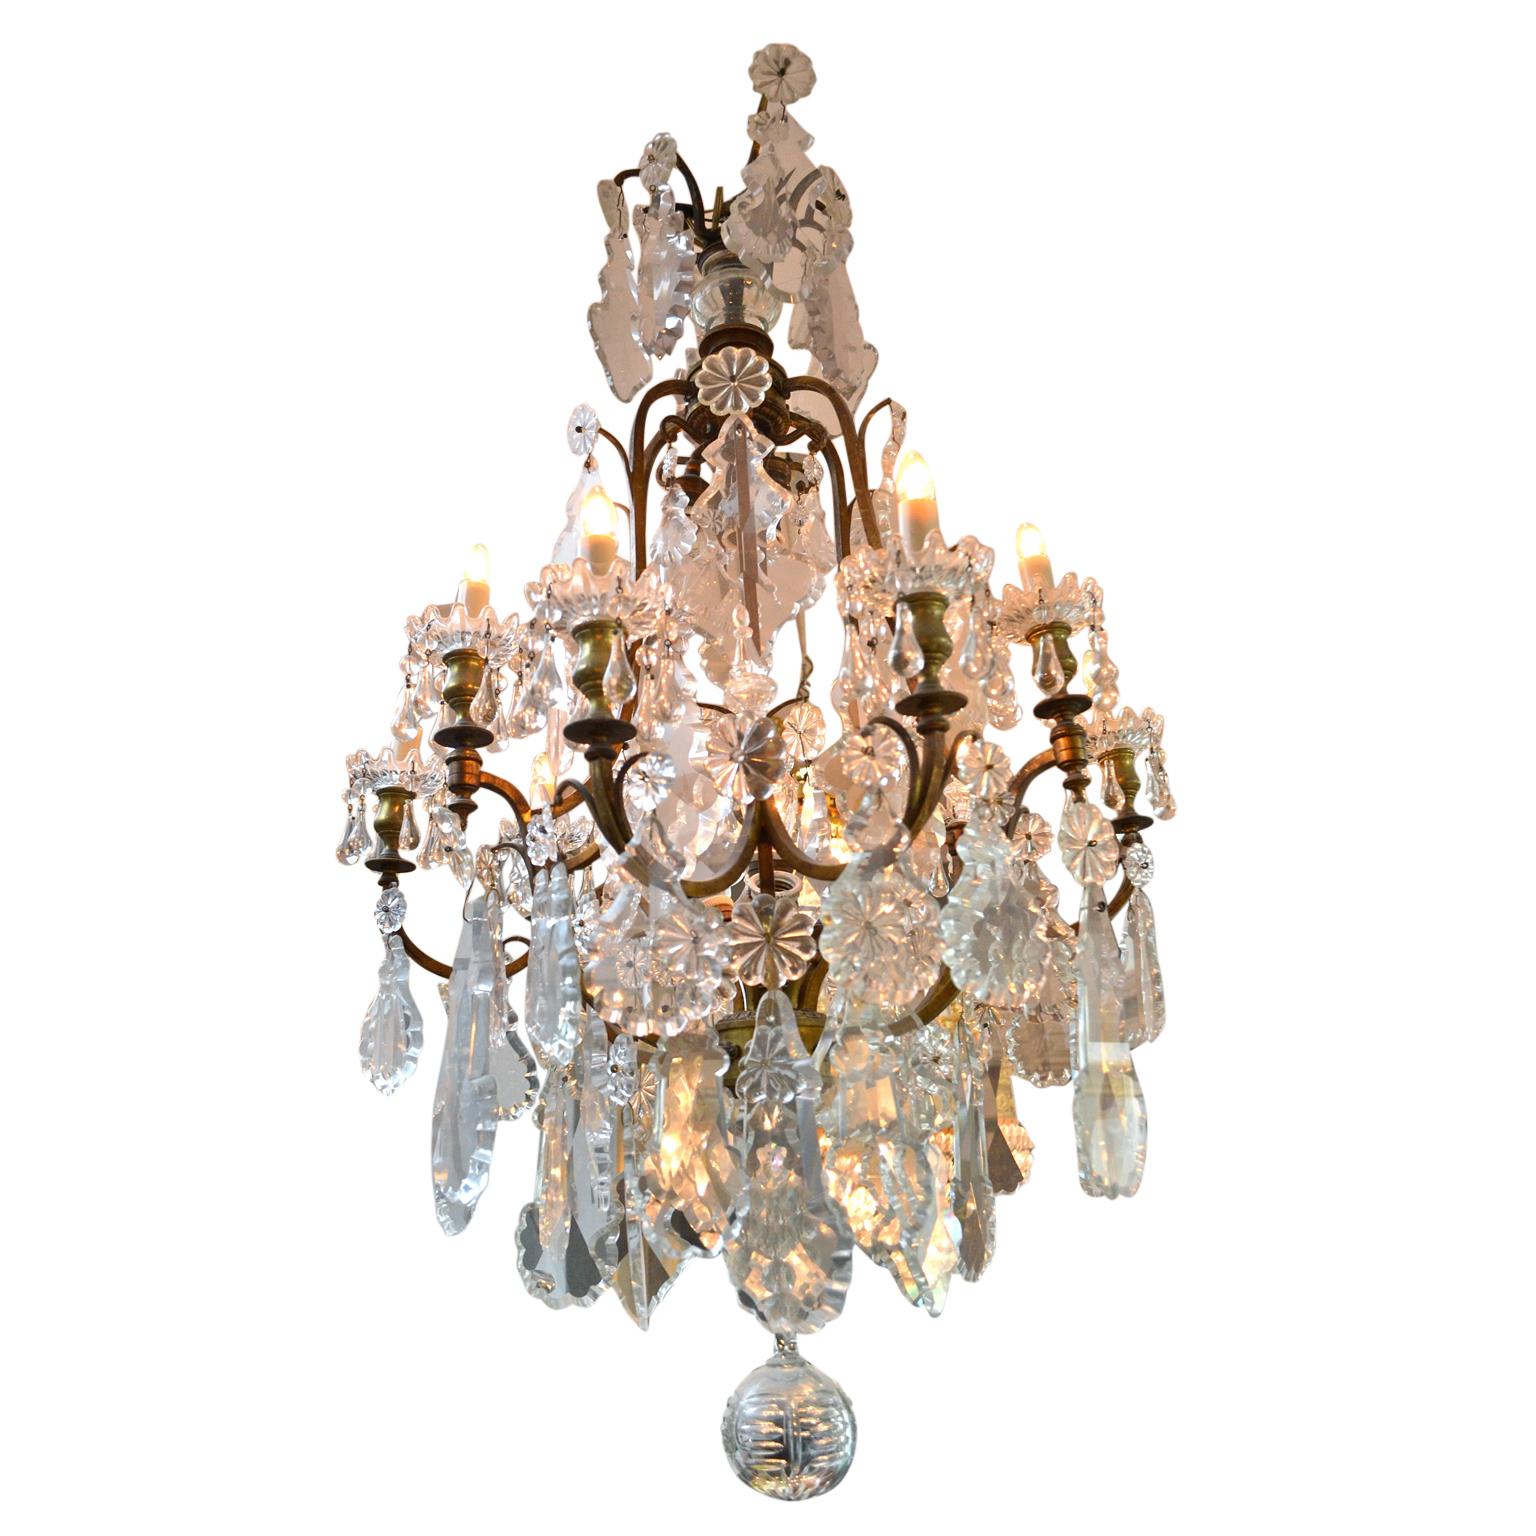 Ein klassischer Kronleuchter im Stil Ludwigs XV. mit neun Armen; der vergoldete Metallrahmen ist schwer mit Kristallplaketten verschiedener Größe beladen; ursprünglich mit Kerzenlicht, aber jetzt vollständig elektrifiziert.